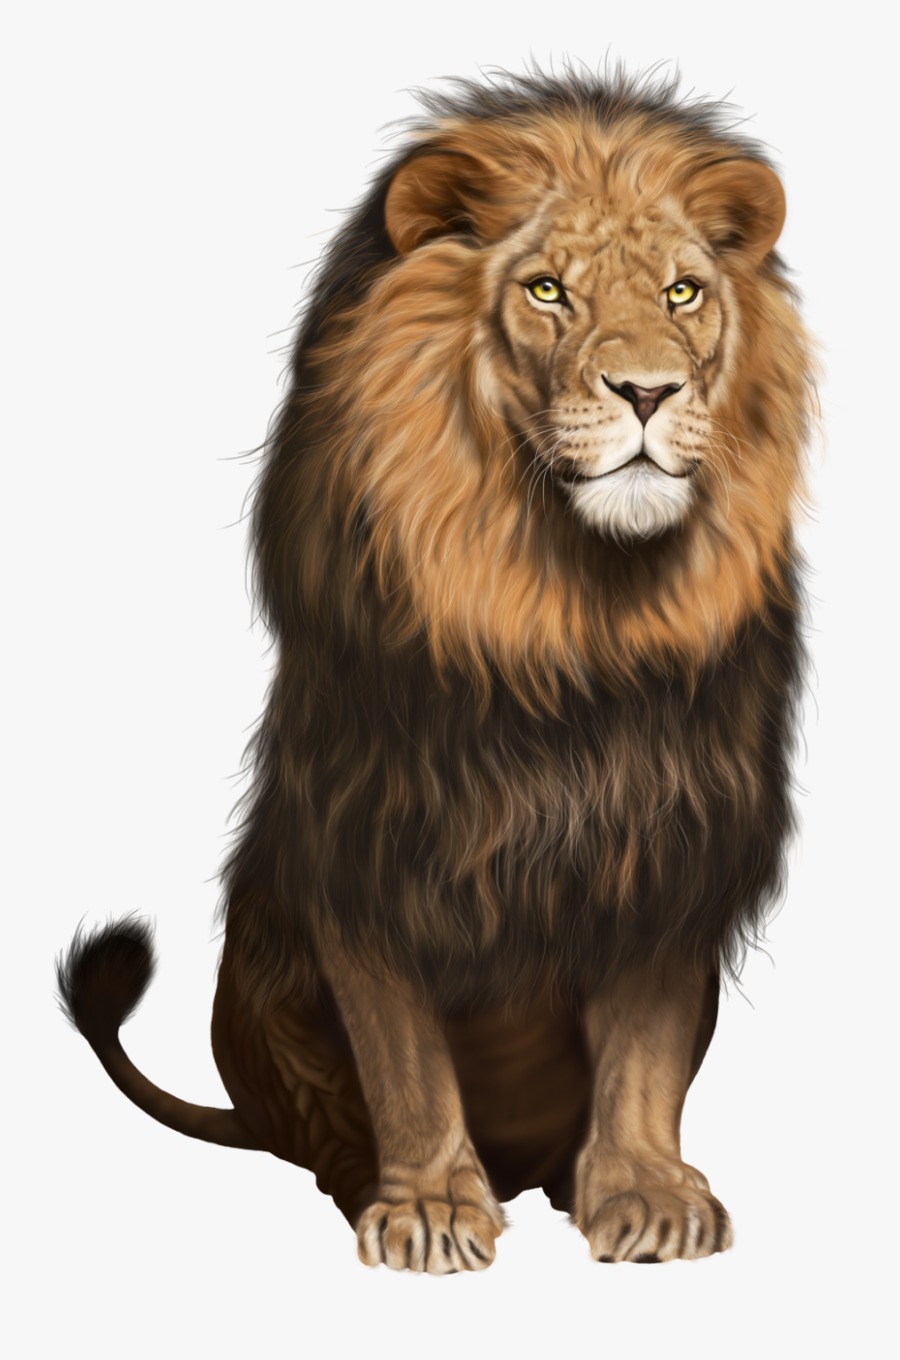 Lion Png, Transparent Clipart